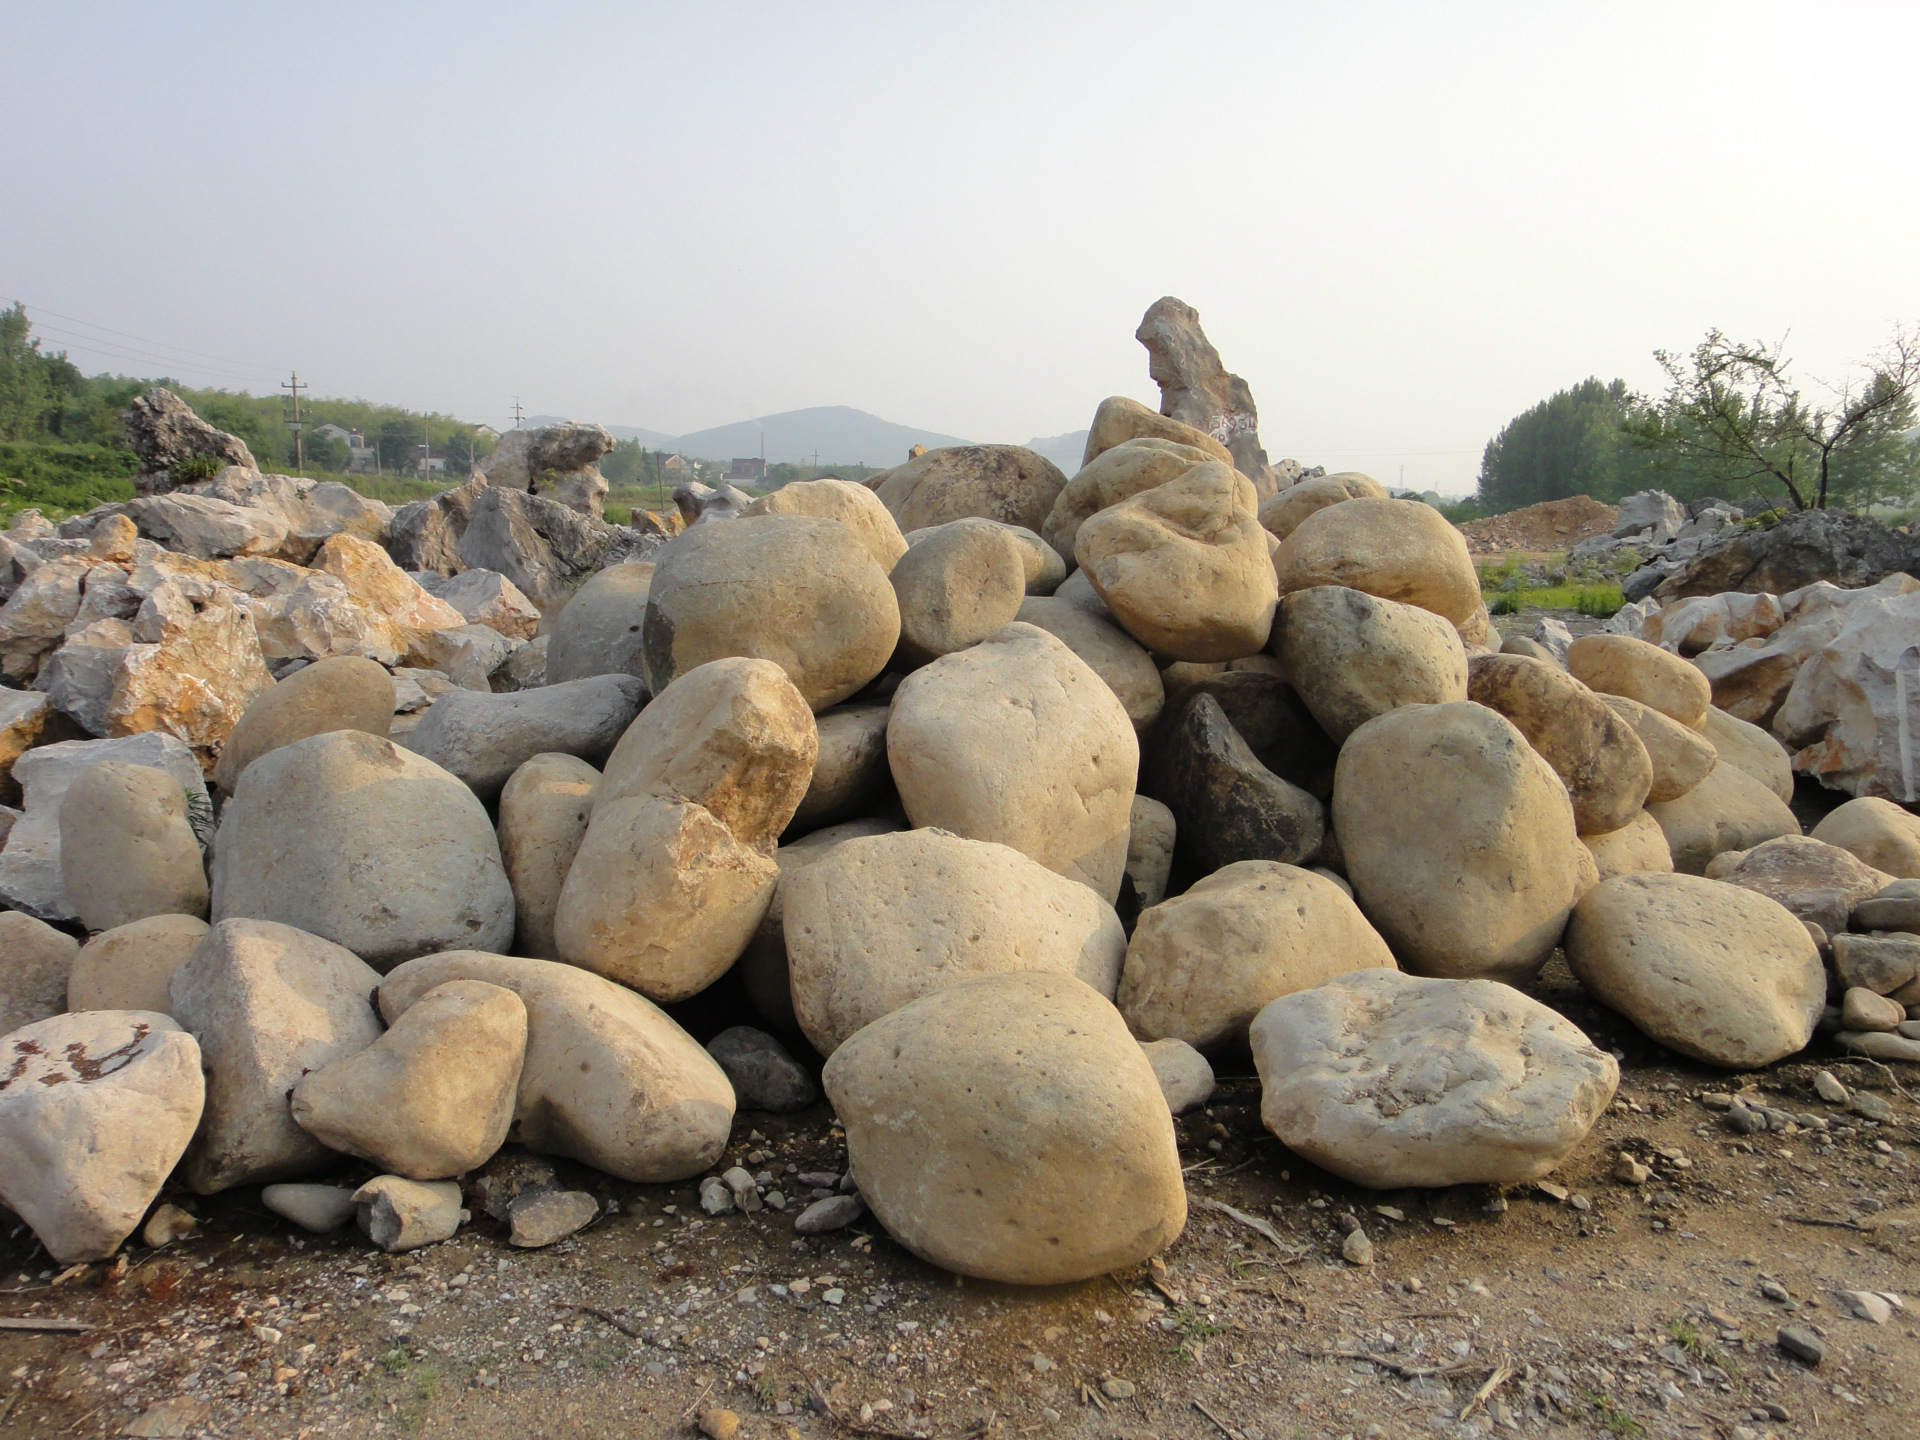 级配碎石 砂夹石 沙加石 地基路基回填材料 现货供应不受影响-阿里巴巴